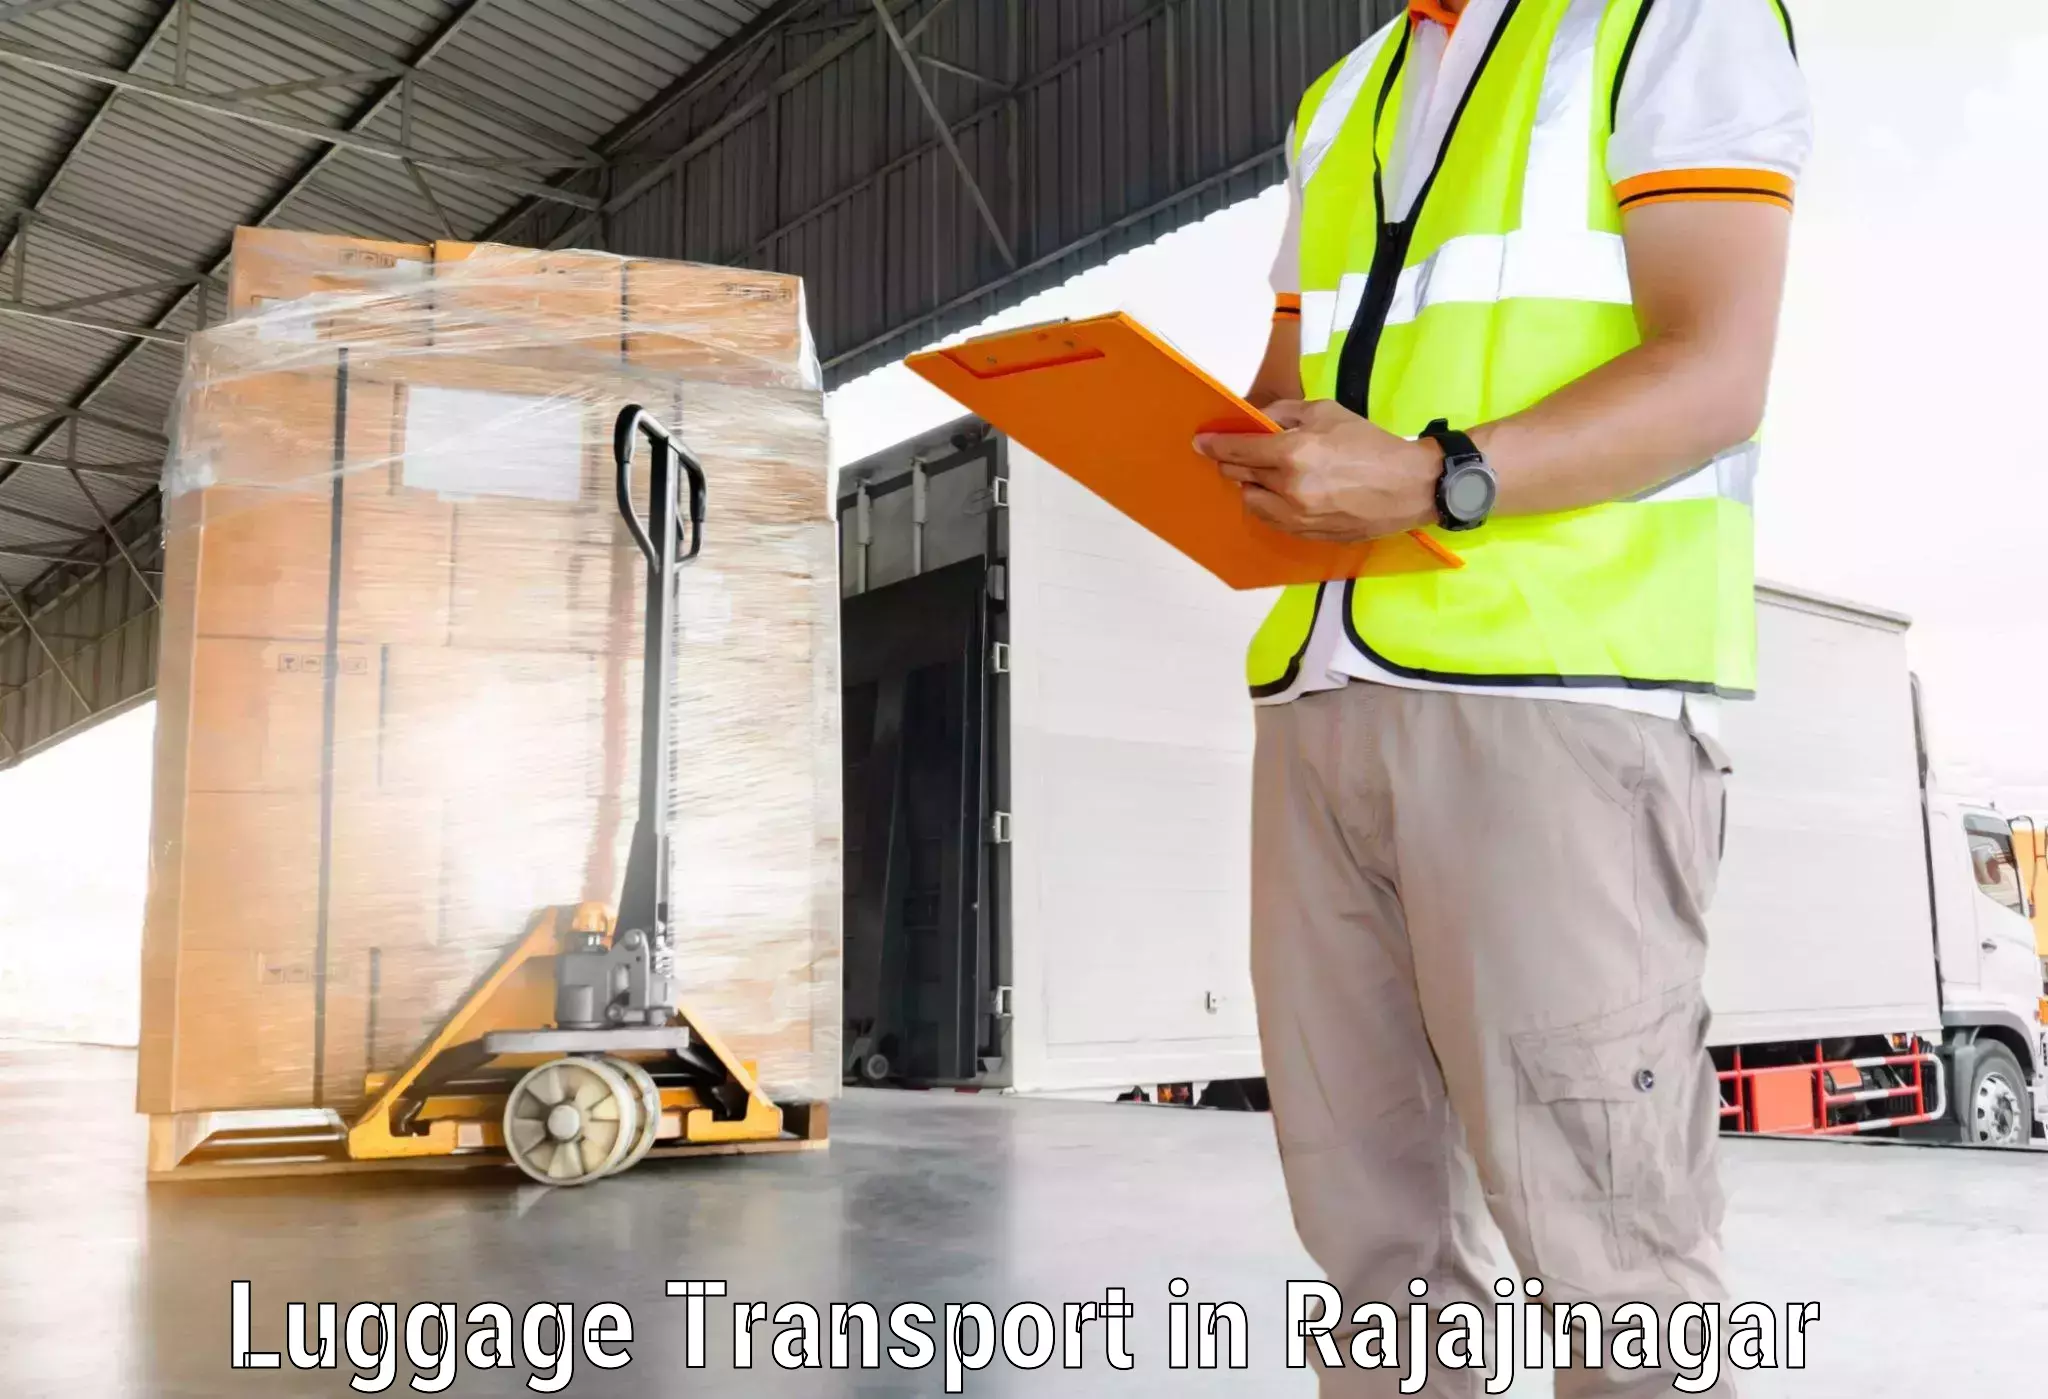 Professional baggage transport in Rajajinagar